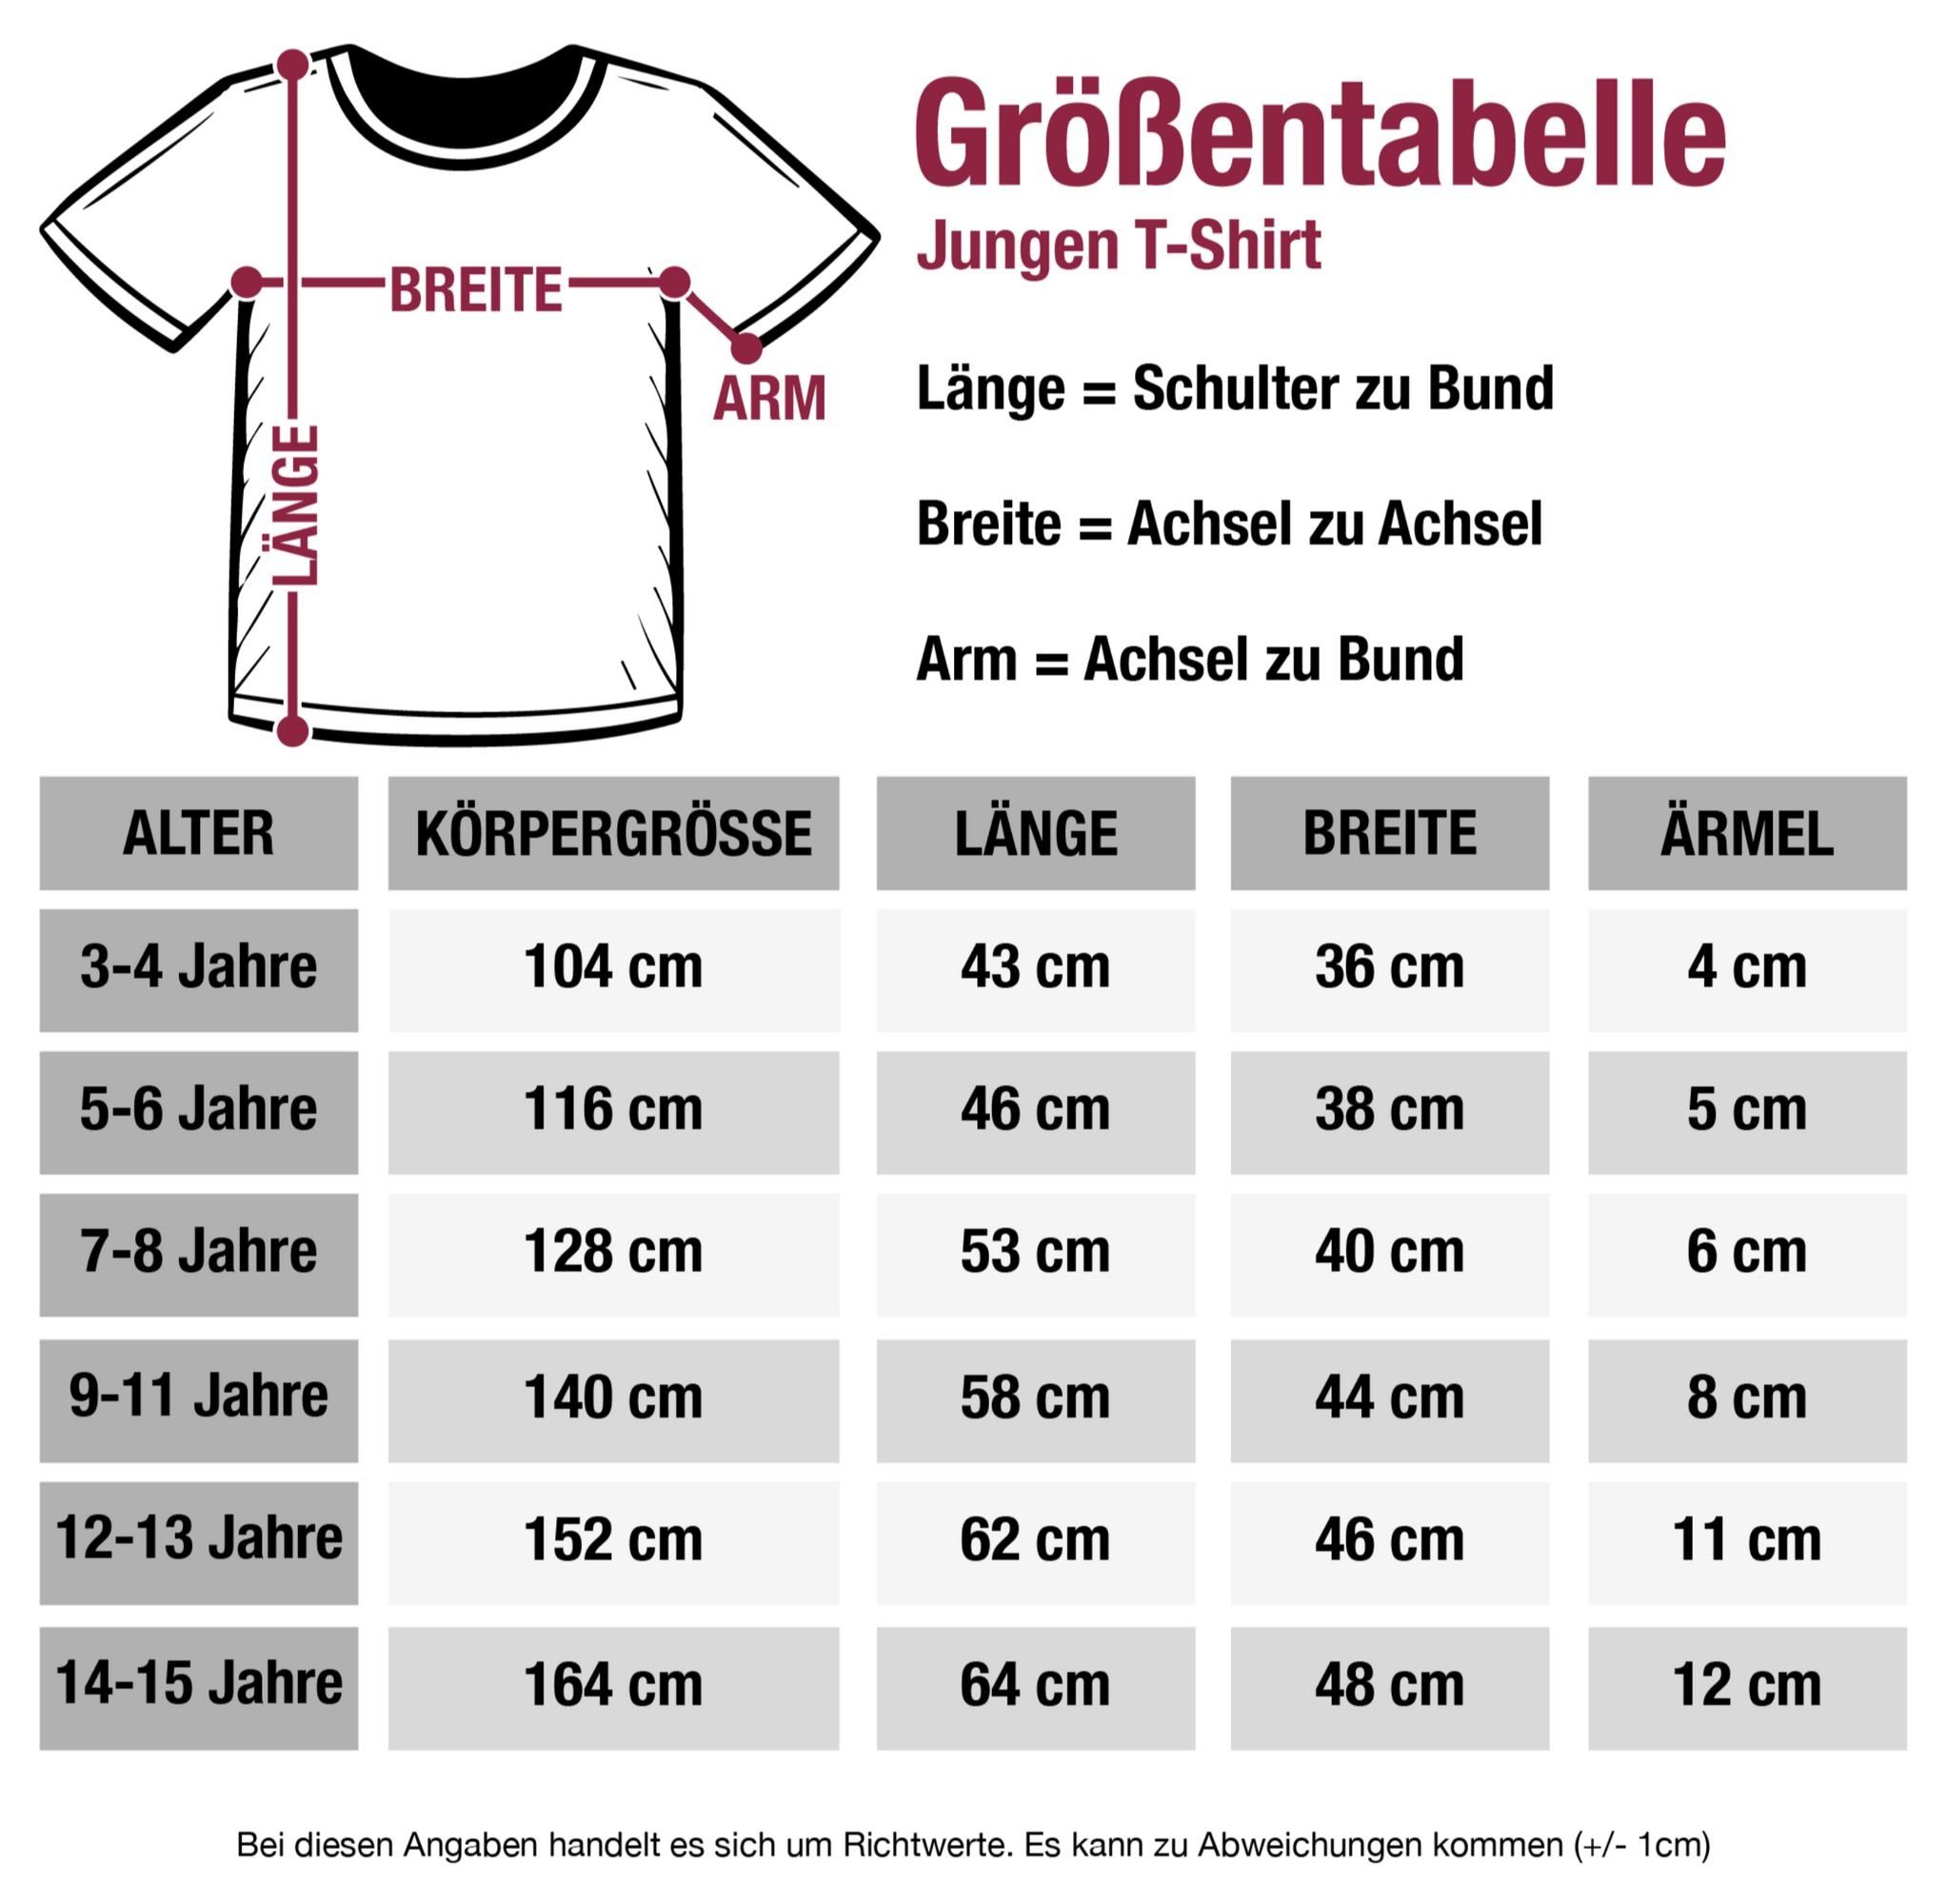 Shirtracer T-Shirt Echte 2 weiß Handball Kleidung Schwarz Sport Spielen Kinder Kerle